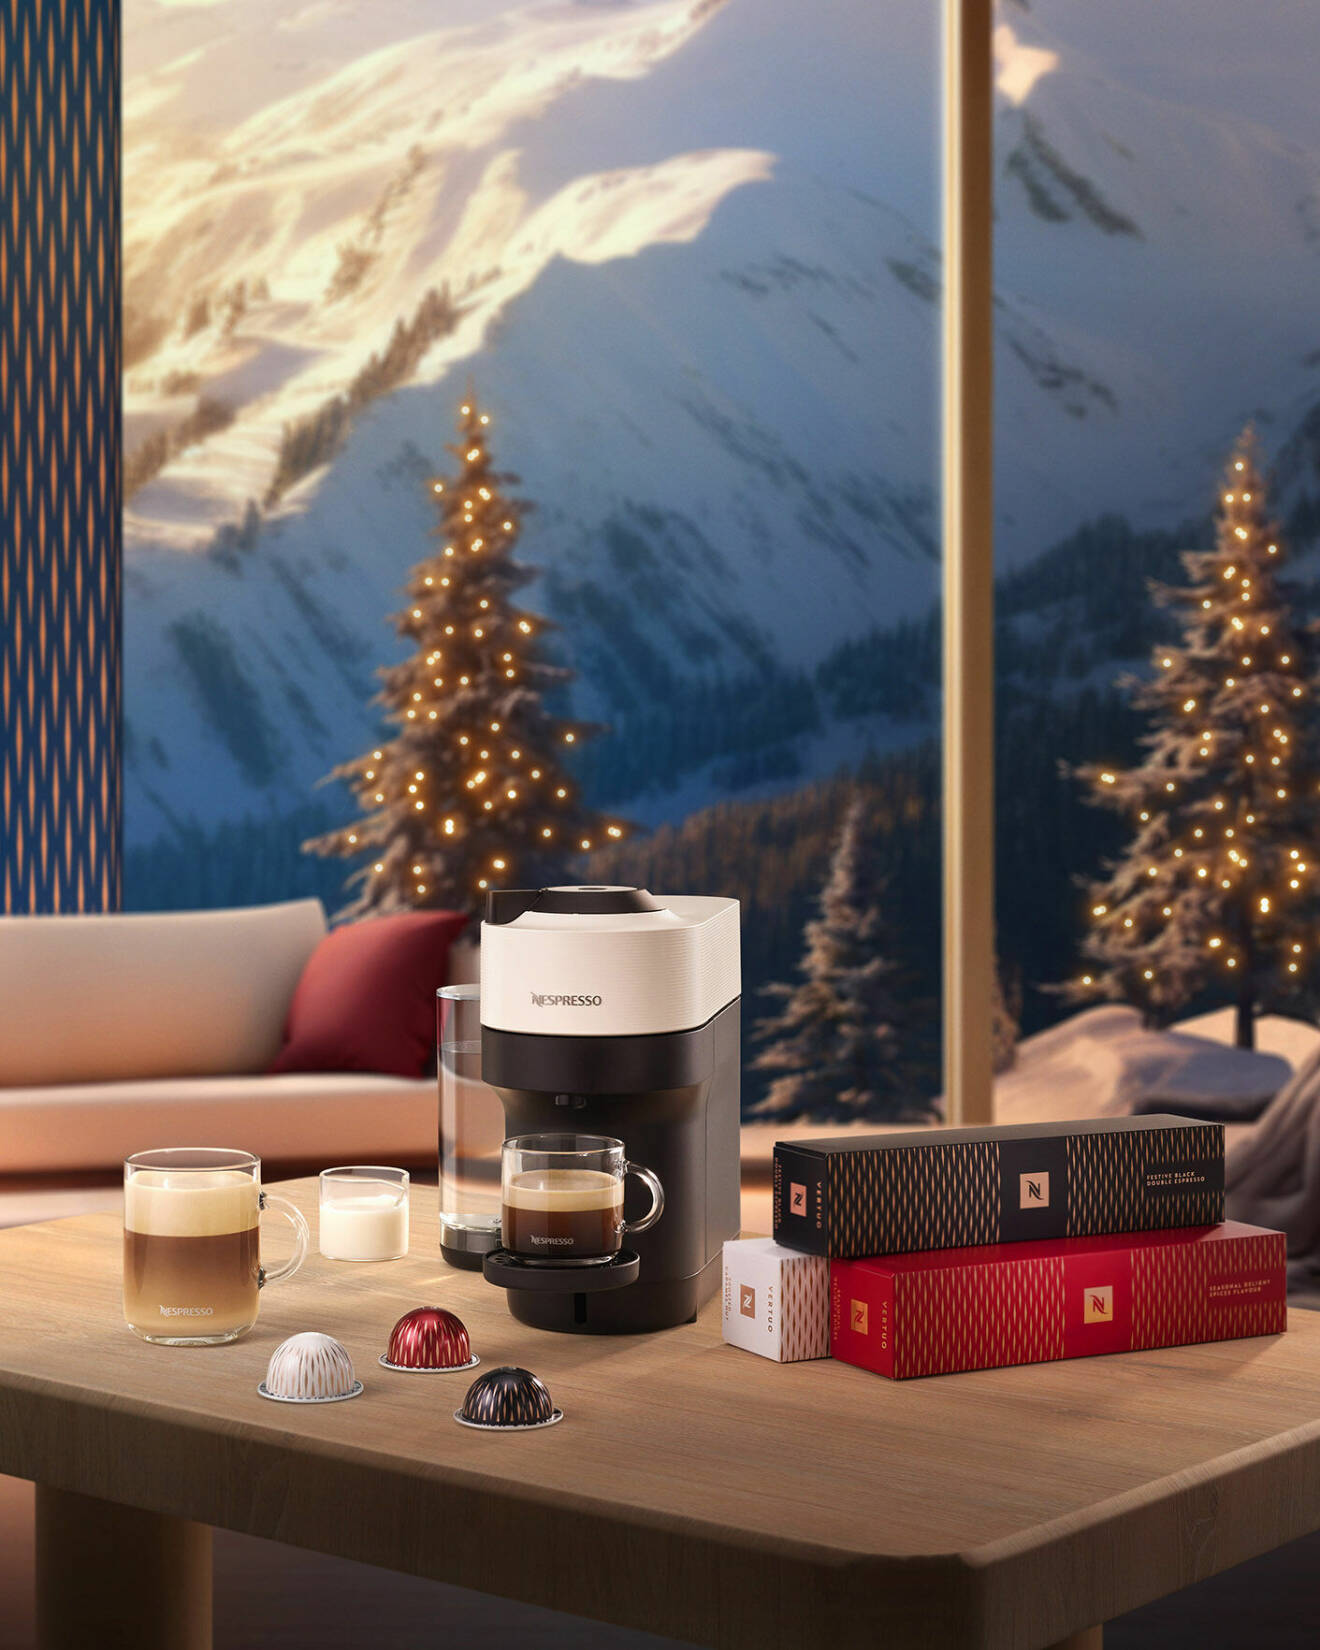 Årets julnyheter från Nespresso har tagits fram tillsammans med skidmärket Fusalp